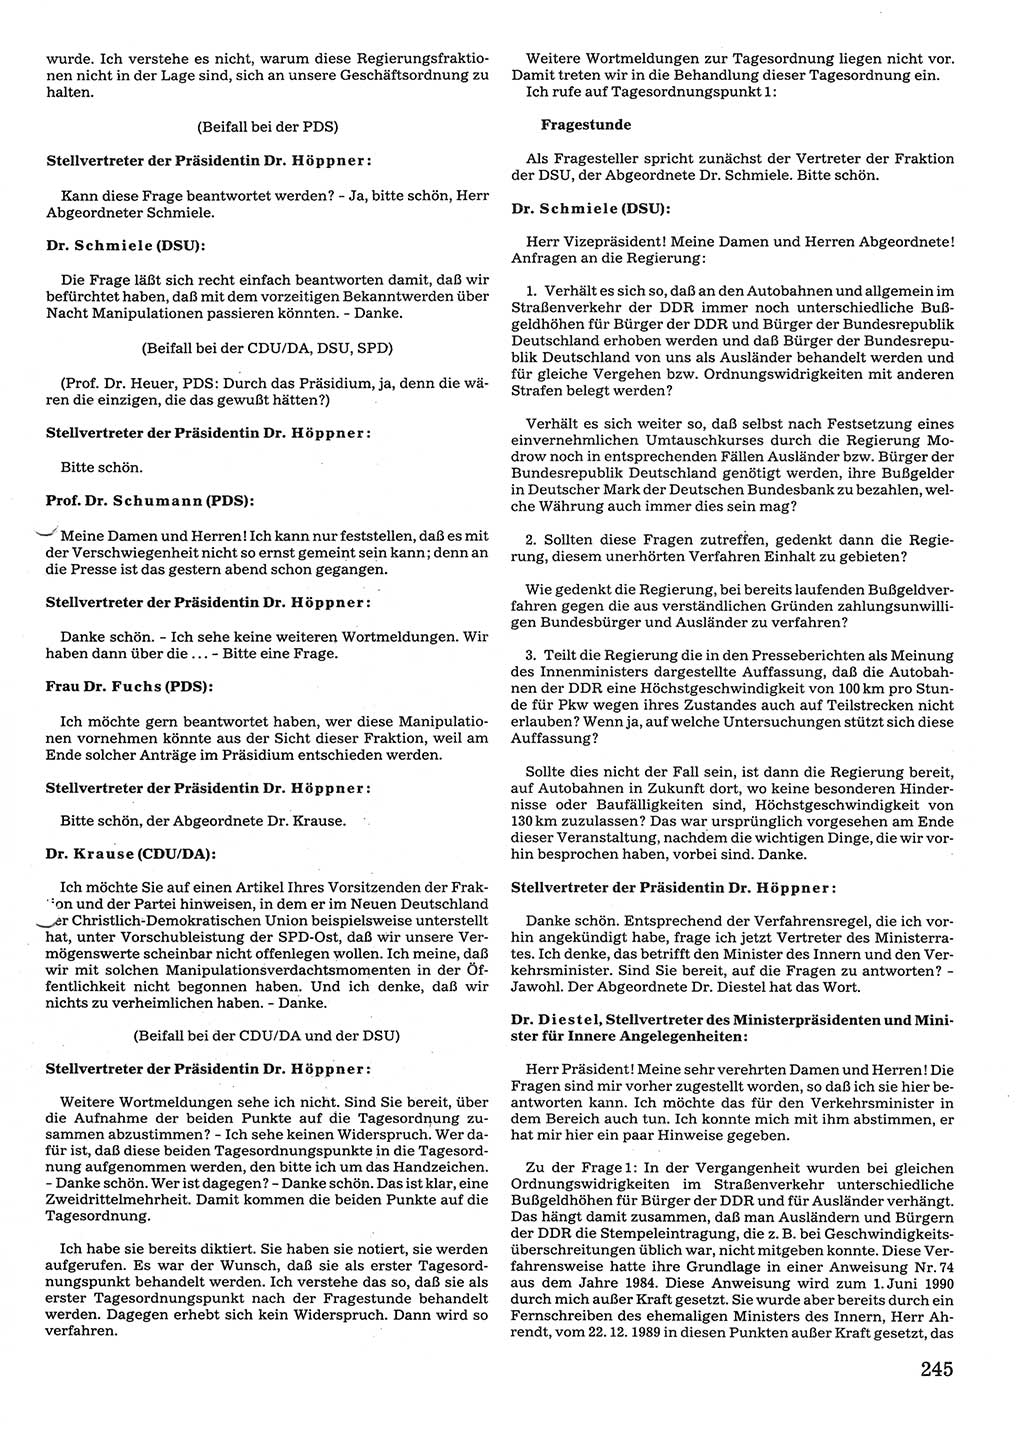 Tagungen der Volkskammer (VK) der Deutschen Demokratischen Republik (DDR), 10. Wahlperiode 1990, Seite 245 (VK. DDR 10. WP. 1990, Prot. Tg. 1-38, 5.4.-2.10.1990, S. 245)